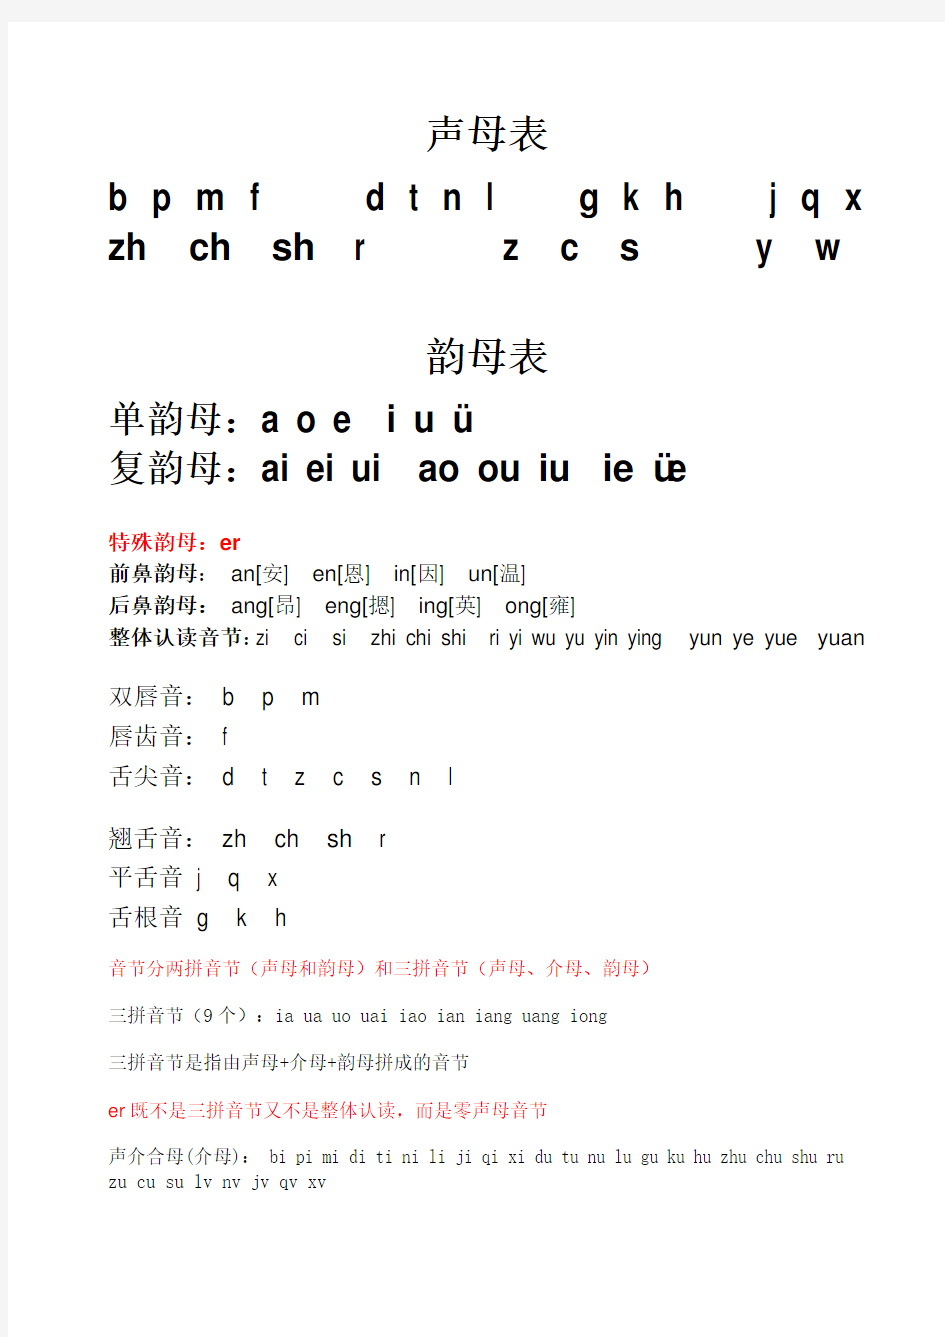 小学一年级汉语拼音字母表(详细)